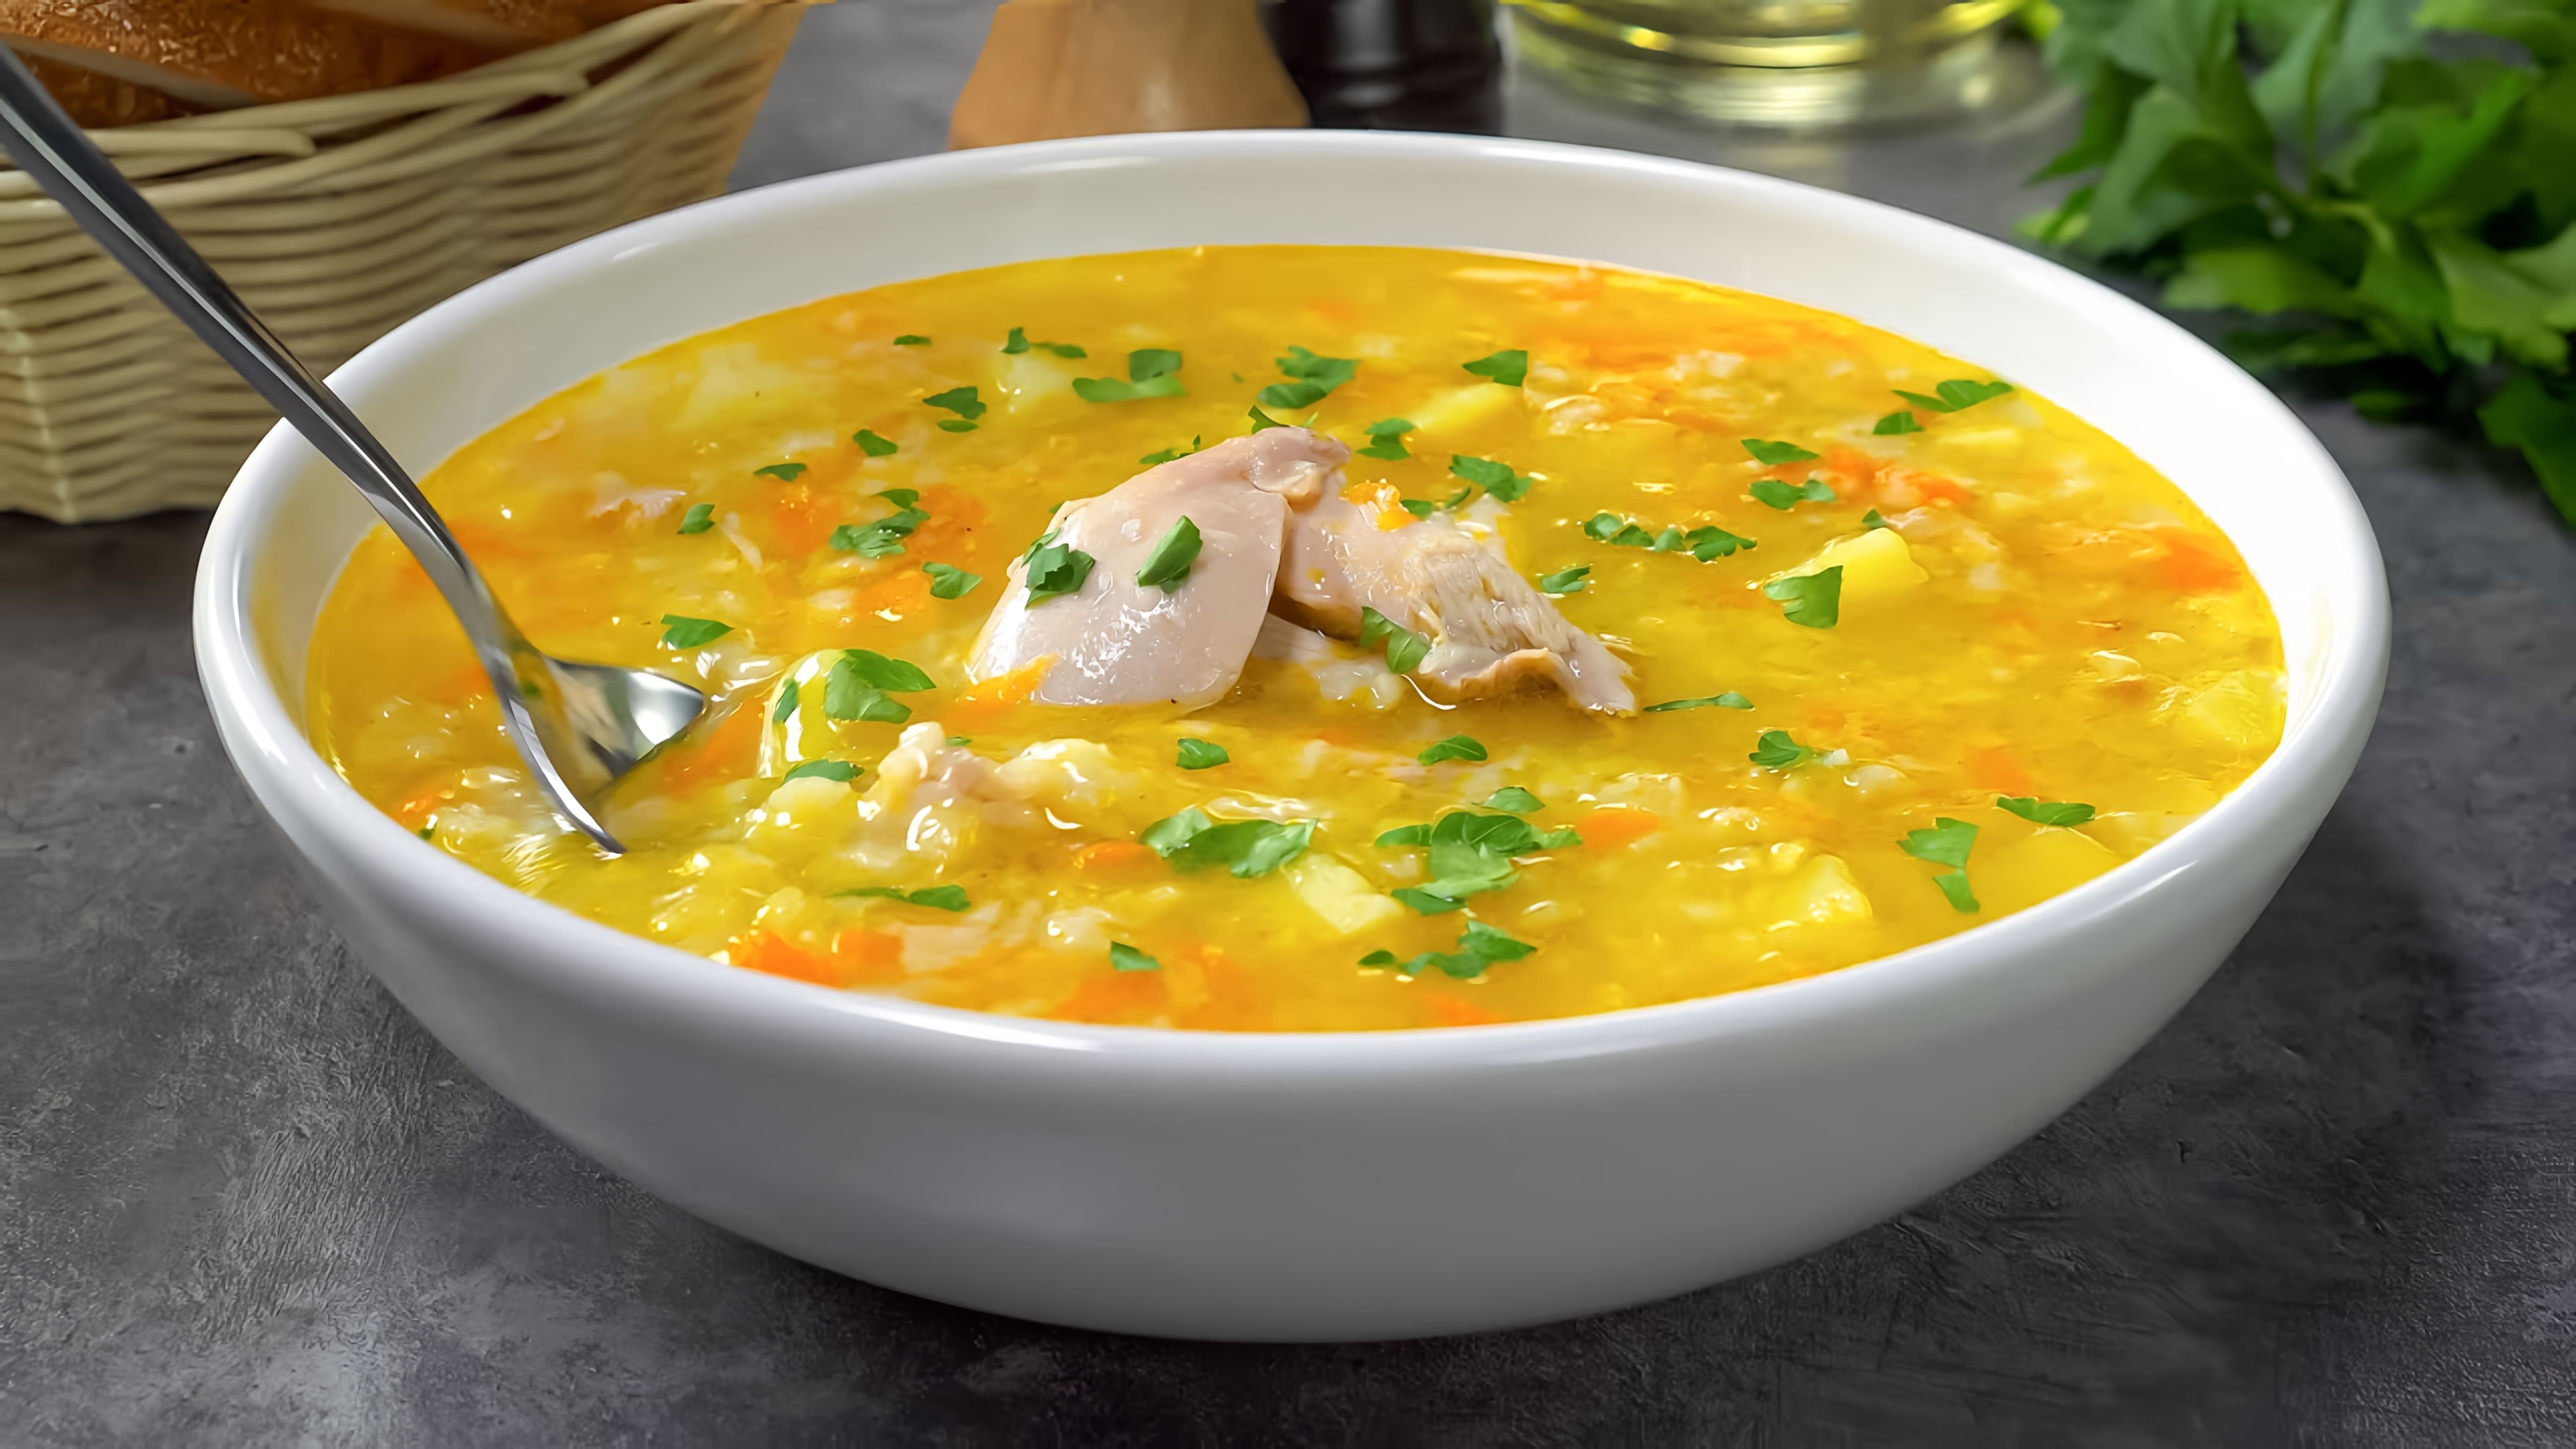 В данном видео демонстрируется рецепт приготовления крестьянского супа с курицей под названием "ЗАТИРУХА"